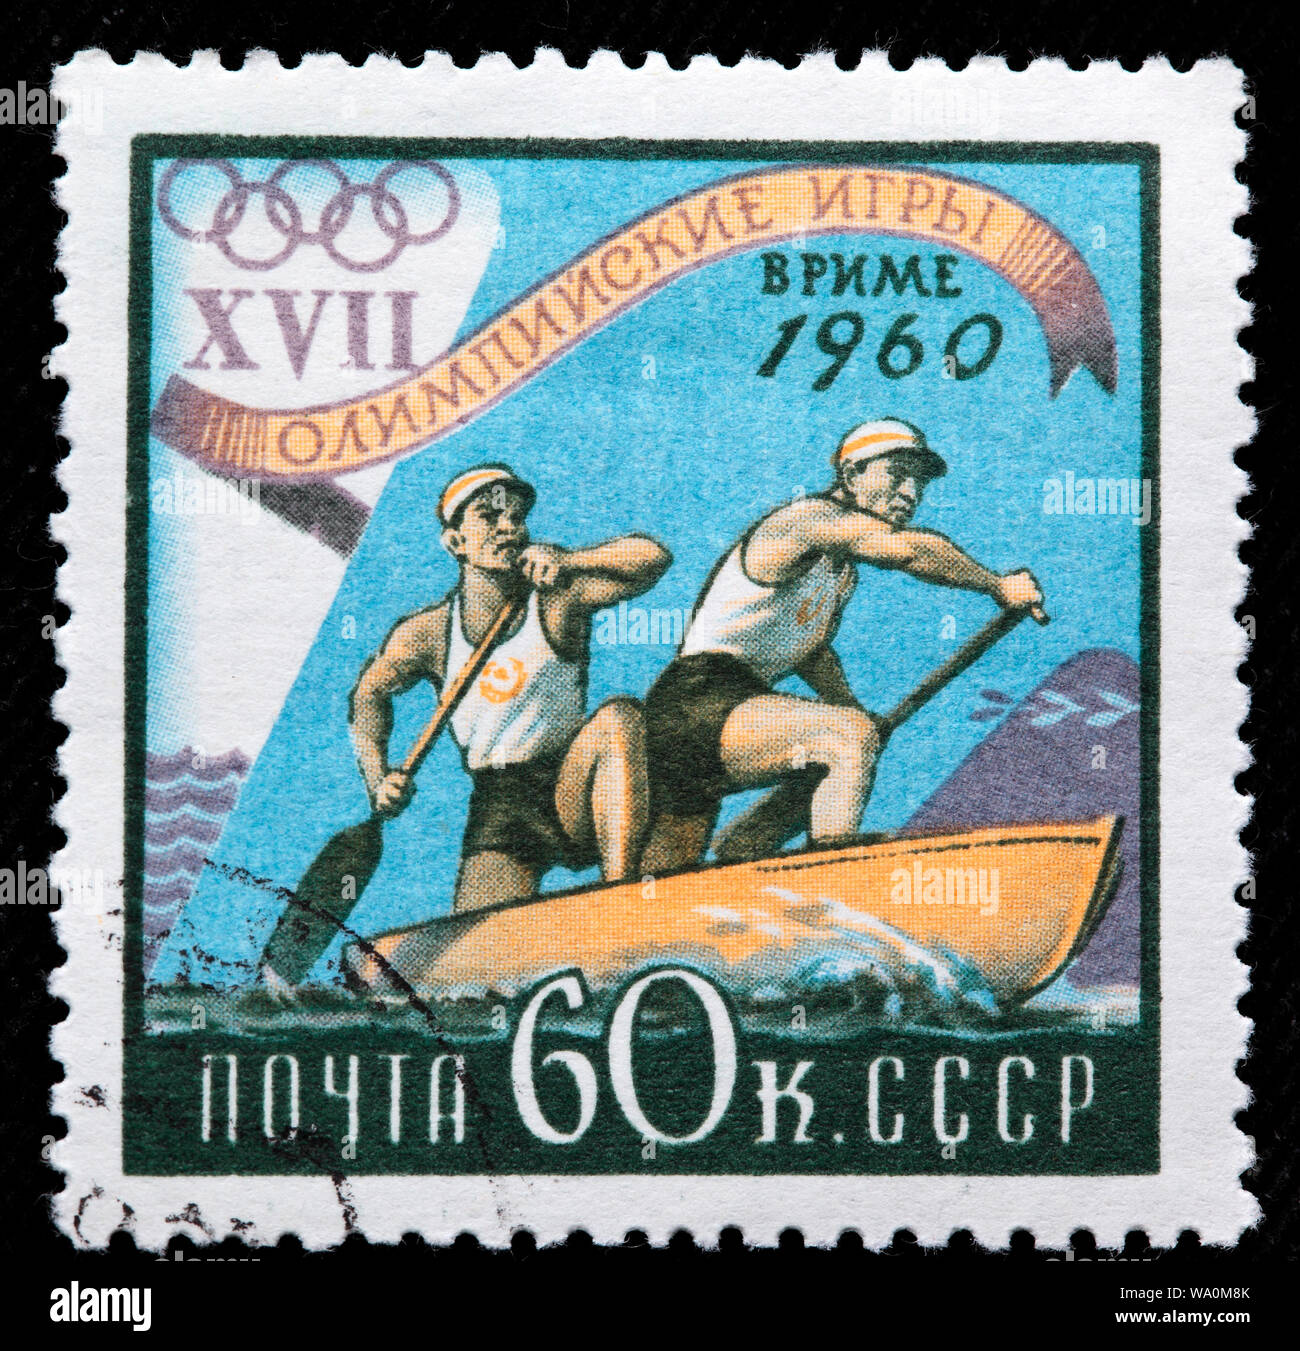 Canoë-kayak aux Jeux Olympiques d'été, 1960, Rome, timbre-poste, Russie, URSS, 1960 Banque D'Images